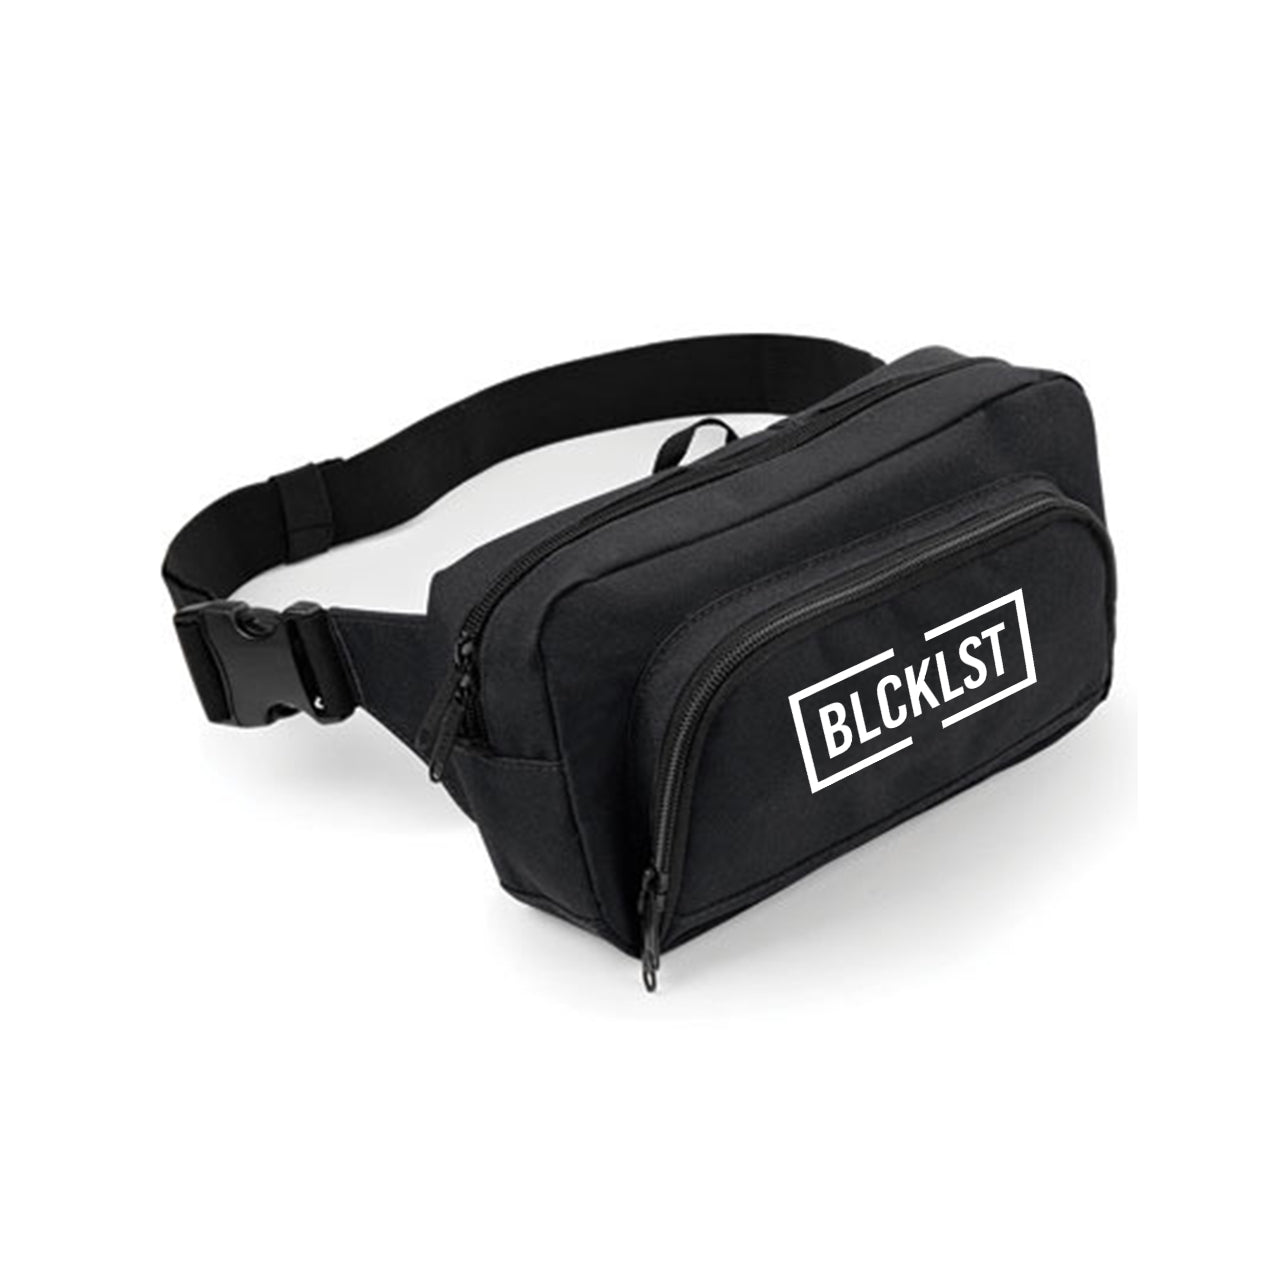 Blacklist - BLCKLST Waistbag